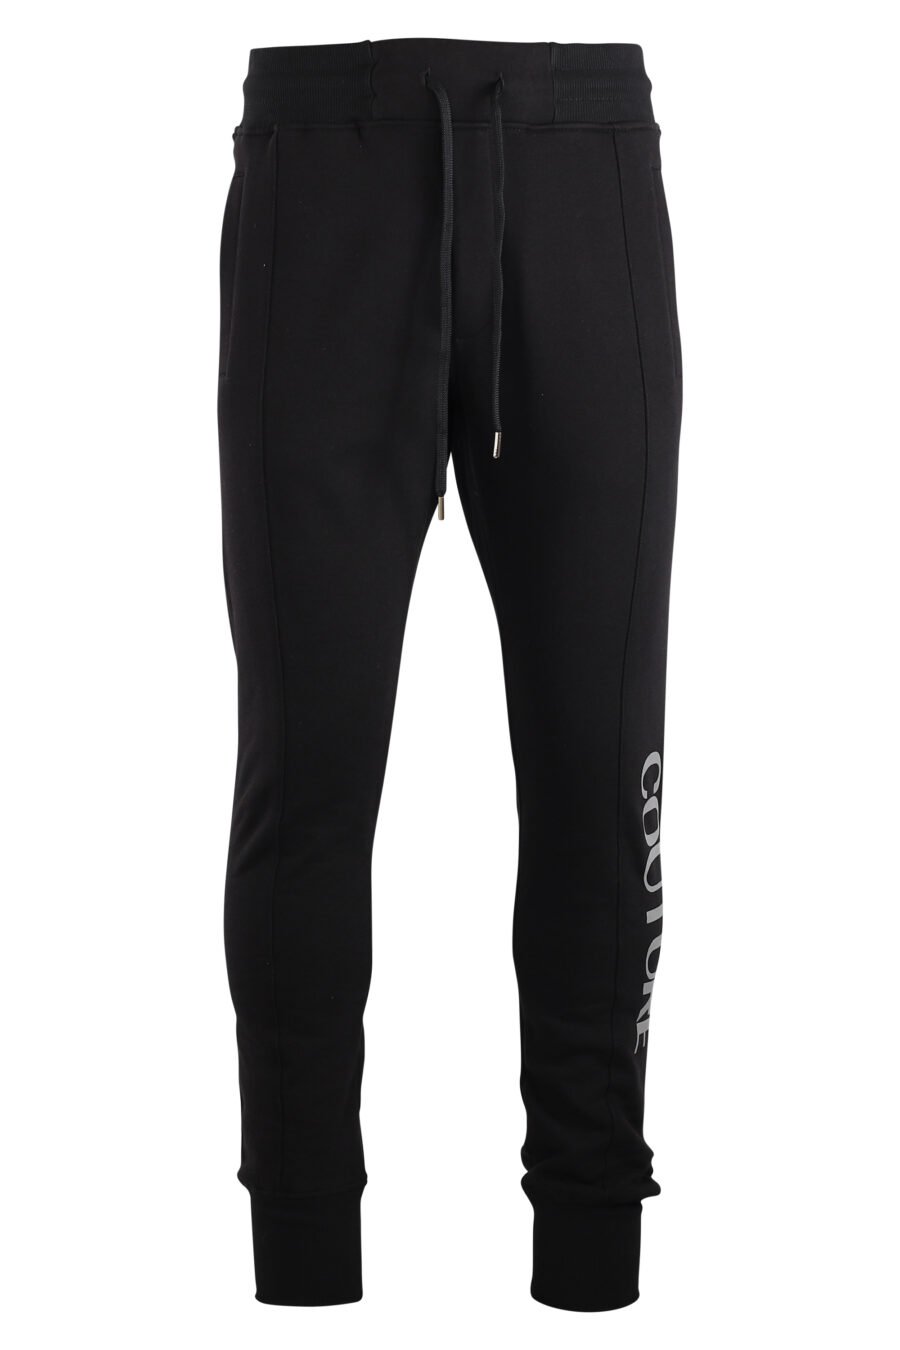 Pantalón de chándal negro con logo vertical plateado - IMG 7501